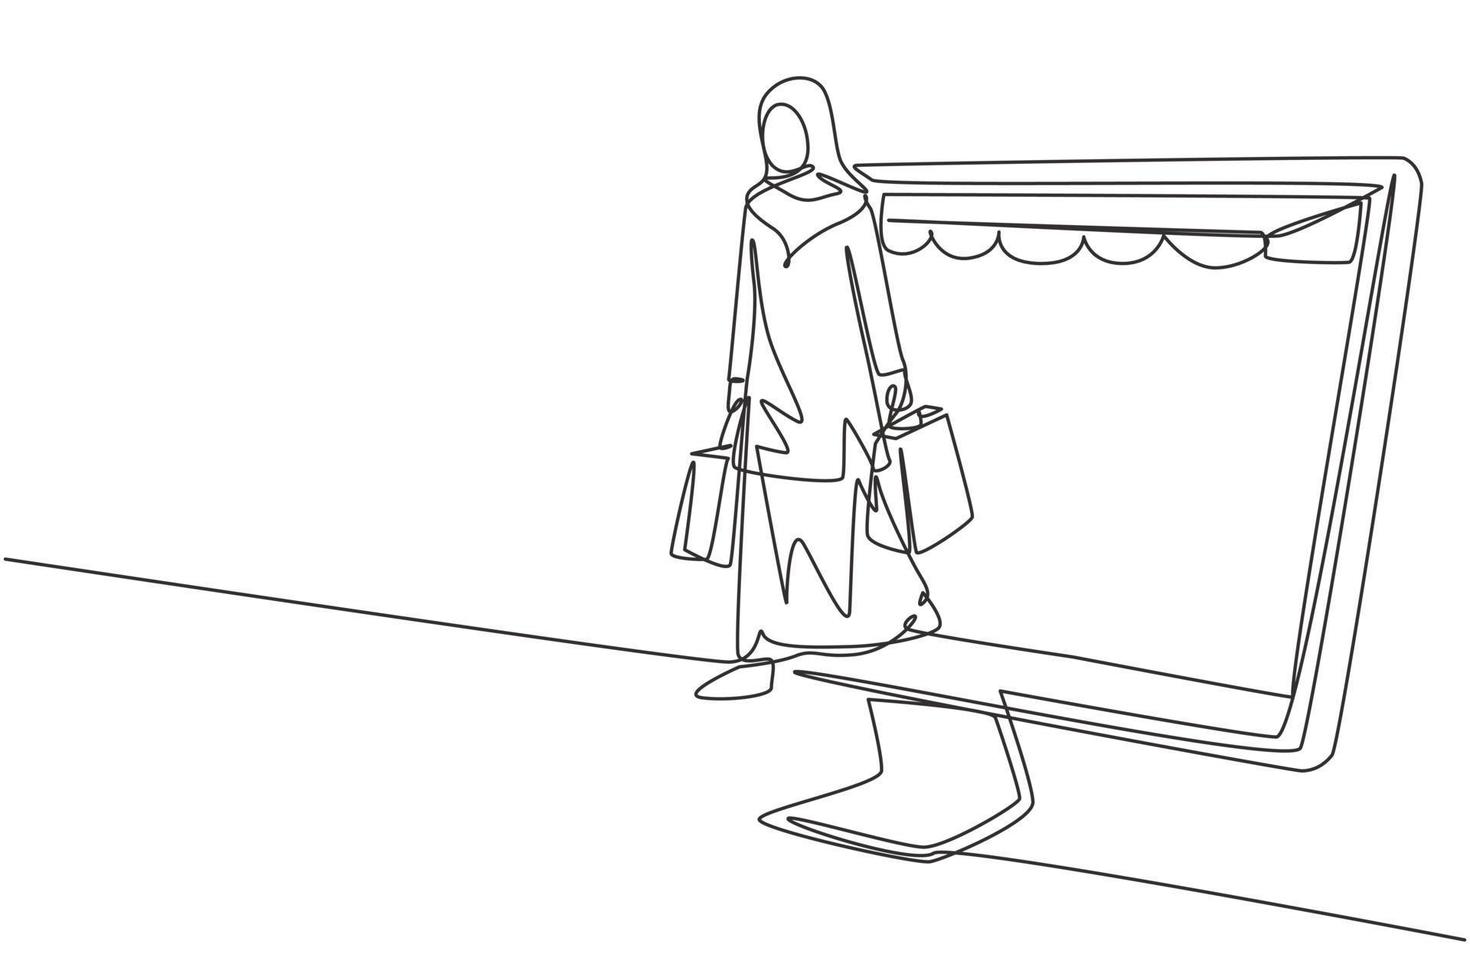 disegno a linea continua di una donna araba che esce dallo schermo del monitor del baldacchino che tiene le borse della spesa. stile di vita digitale e concetto di consumismo. illustrazione vettoriale di disegno grafico di disegno grafico di una linea dinamica